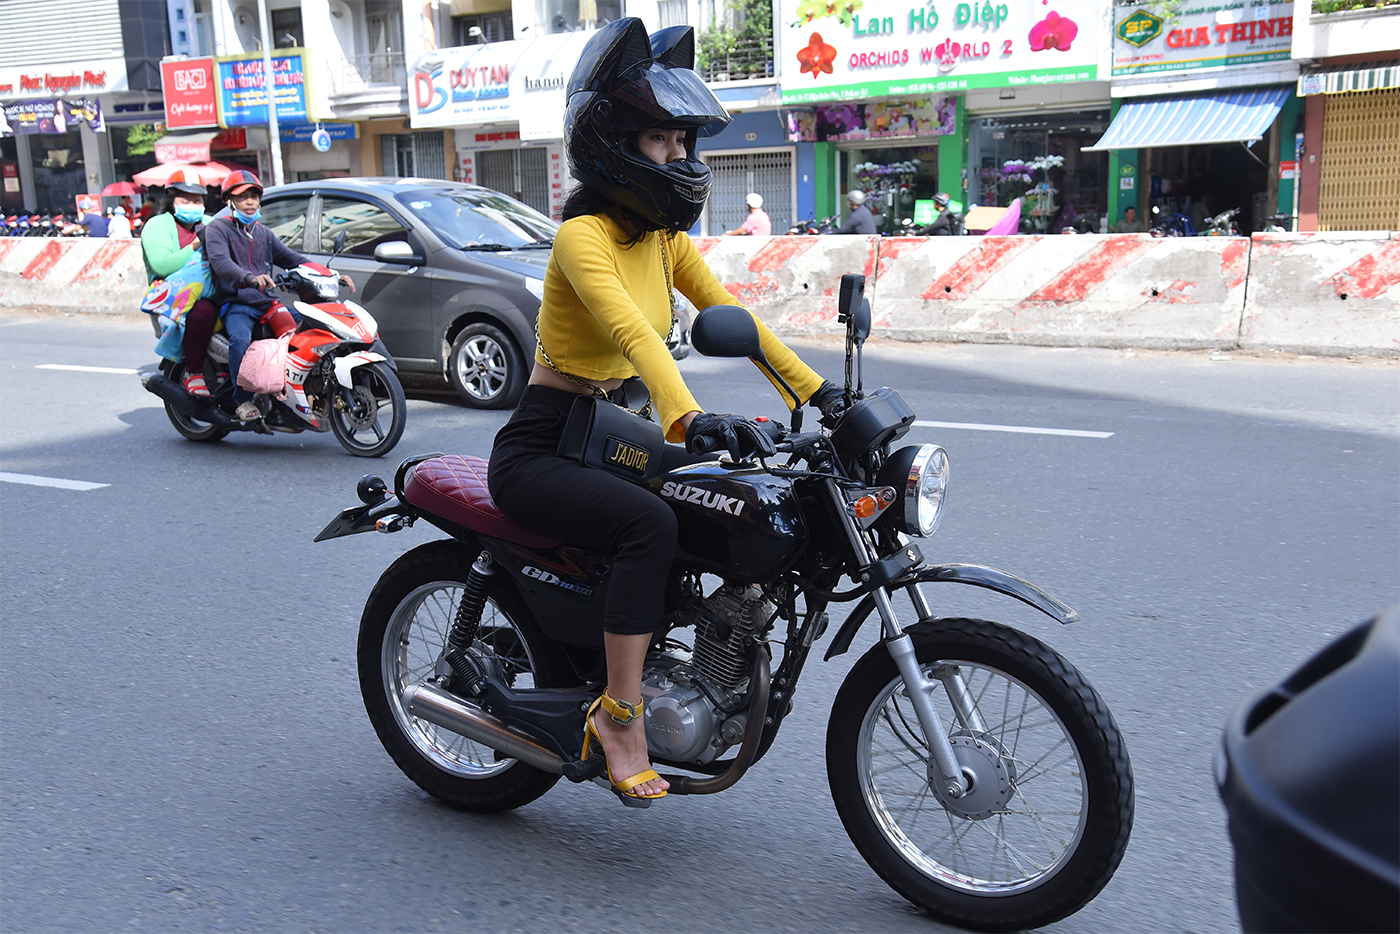 Dàn xe Suzuki GD110HU offline “hoành tráng” tại Sài Gòn